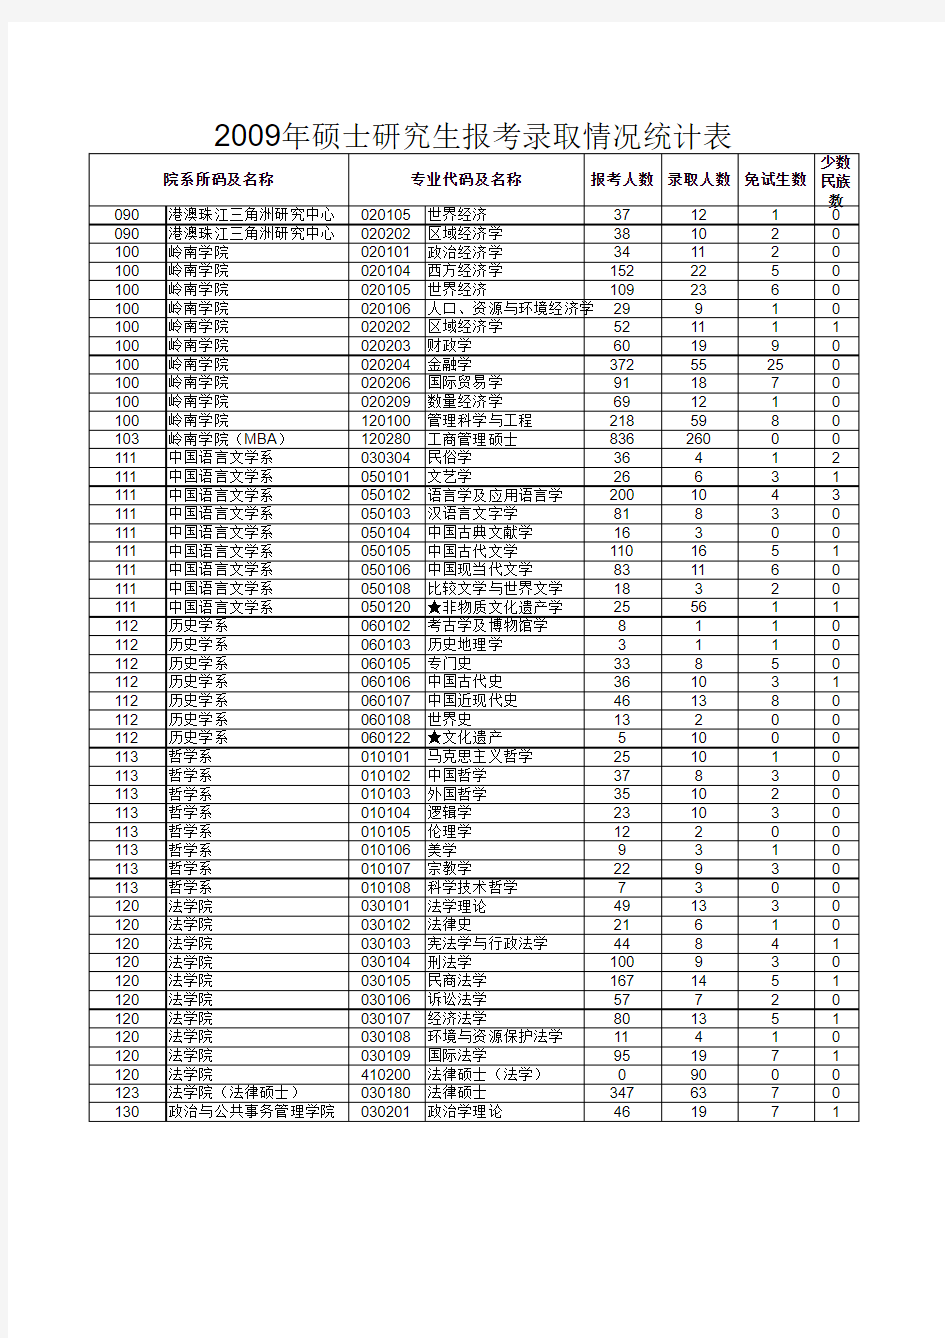 中山大学2009---2011年分院系专业报名及录取人数统计表